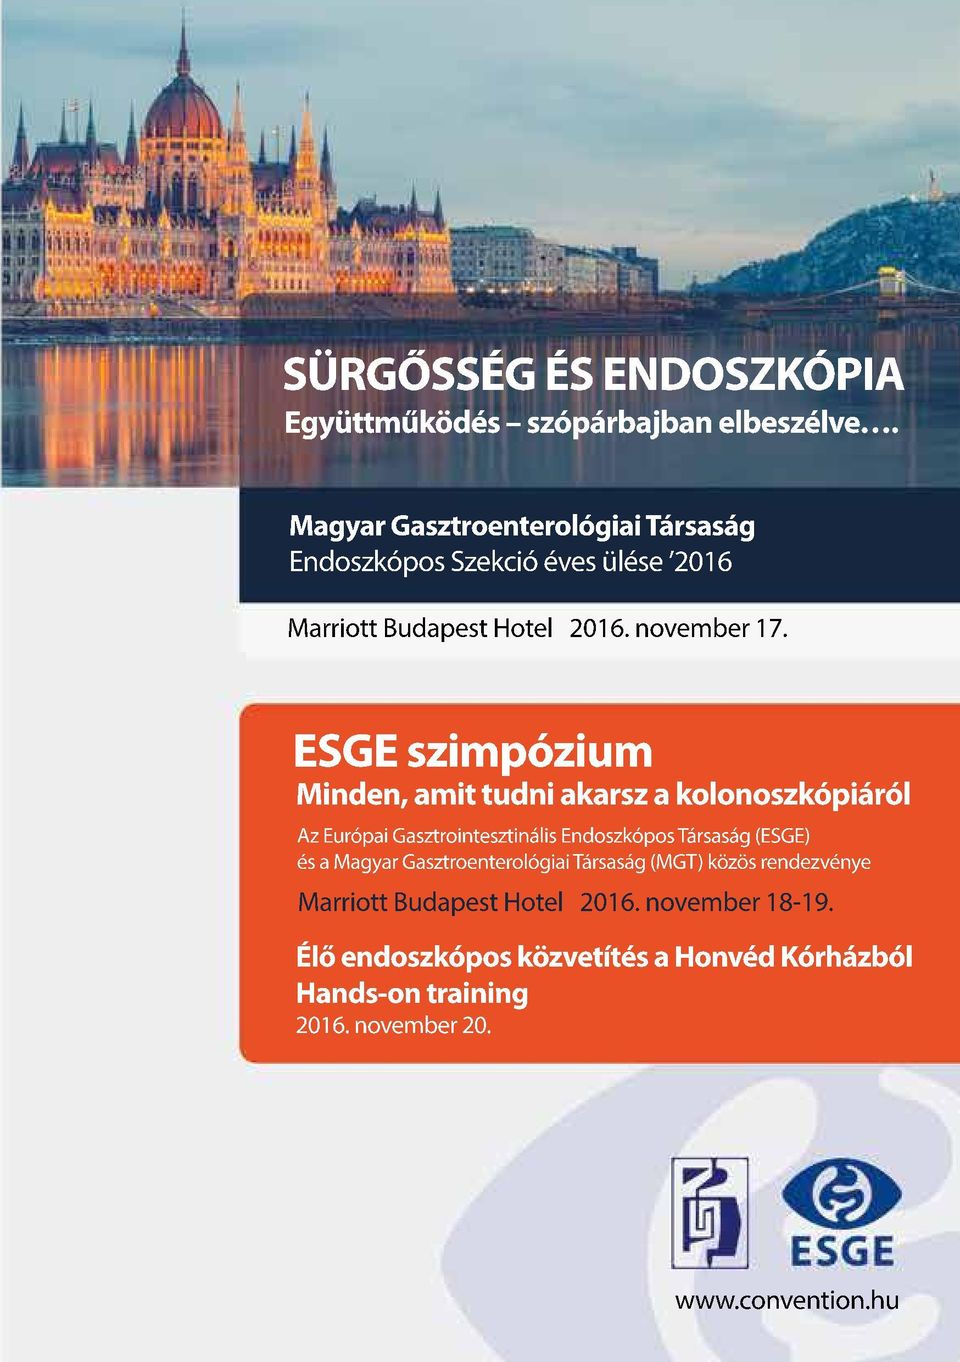 ESGE szimpózium Minden, amit tudni akarsz a kolonoszkópiáról Az Európai Gasztrointesztinális Endoszkópos Társaság (ESGE) és a